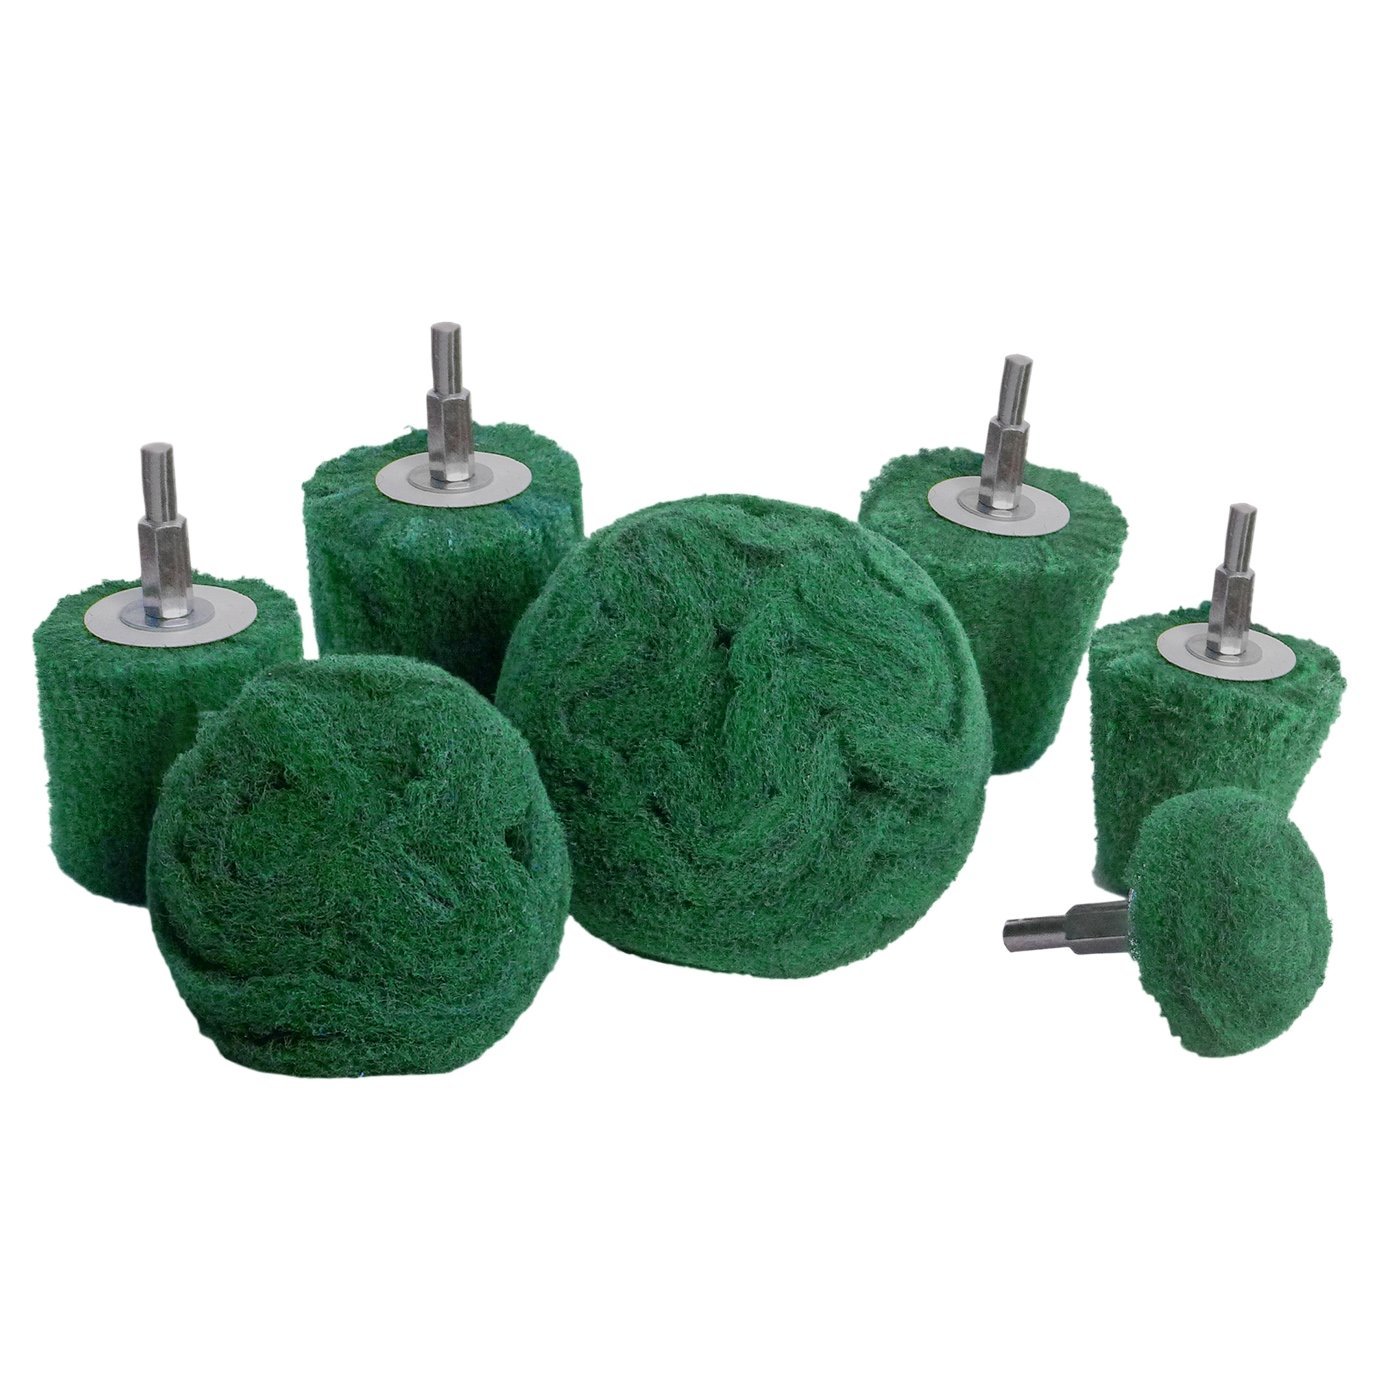 Tampons de forage abrasifs non tissés 7 pièces, montés sur tige de 1/4 de pouce - Vert - Moyen